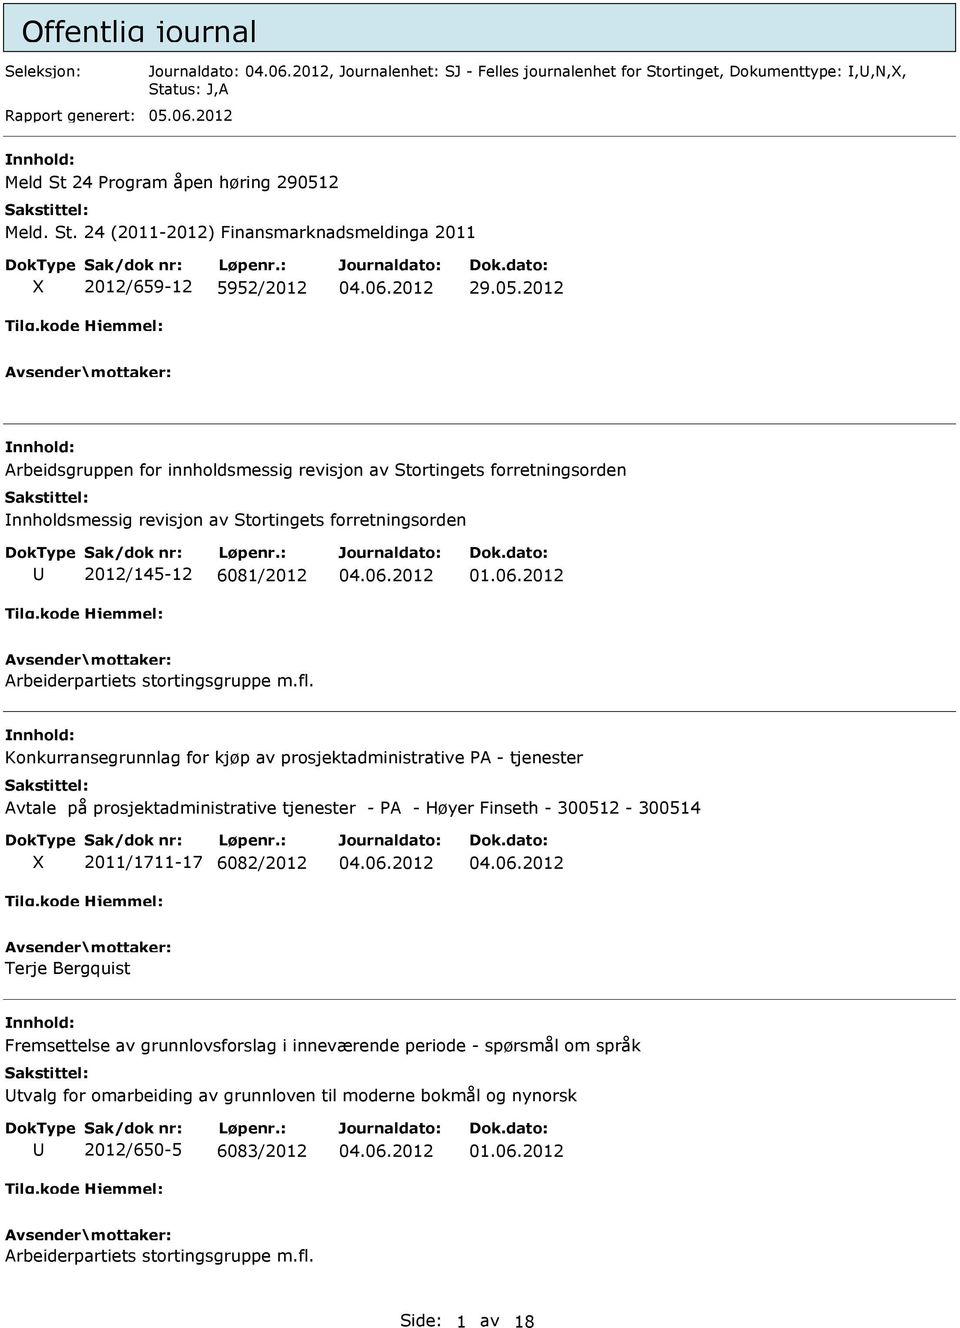 Konkurransegrunnlag for kjøp av prosjektadministrative PA - tjenester Avtale på prosjektadministrative tjenester - PA - Høyer Finseth - 300512-300514 2011/1711-17 6082/2012 Terje Bergquist